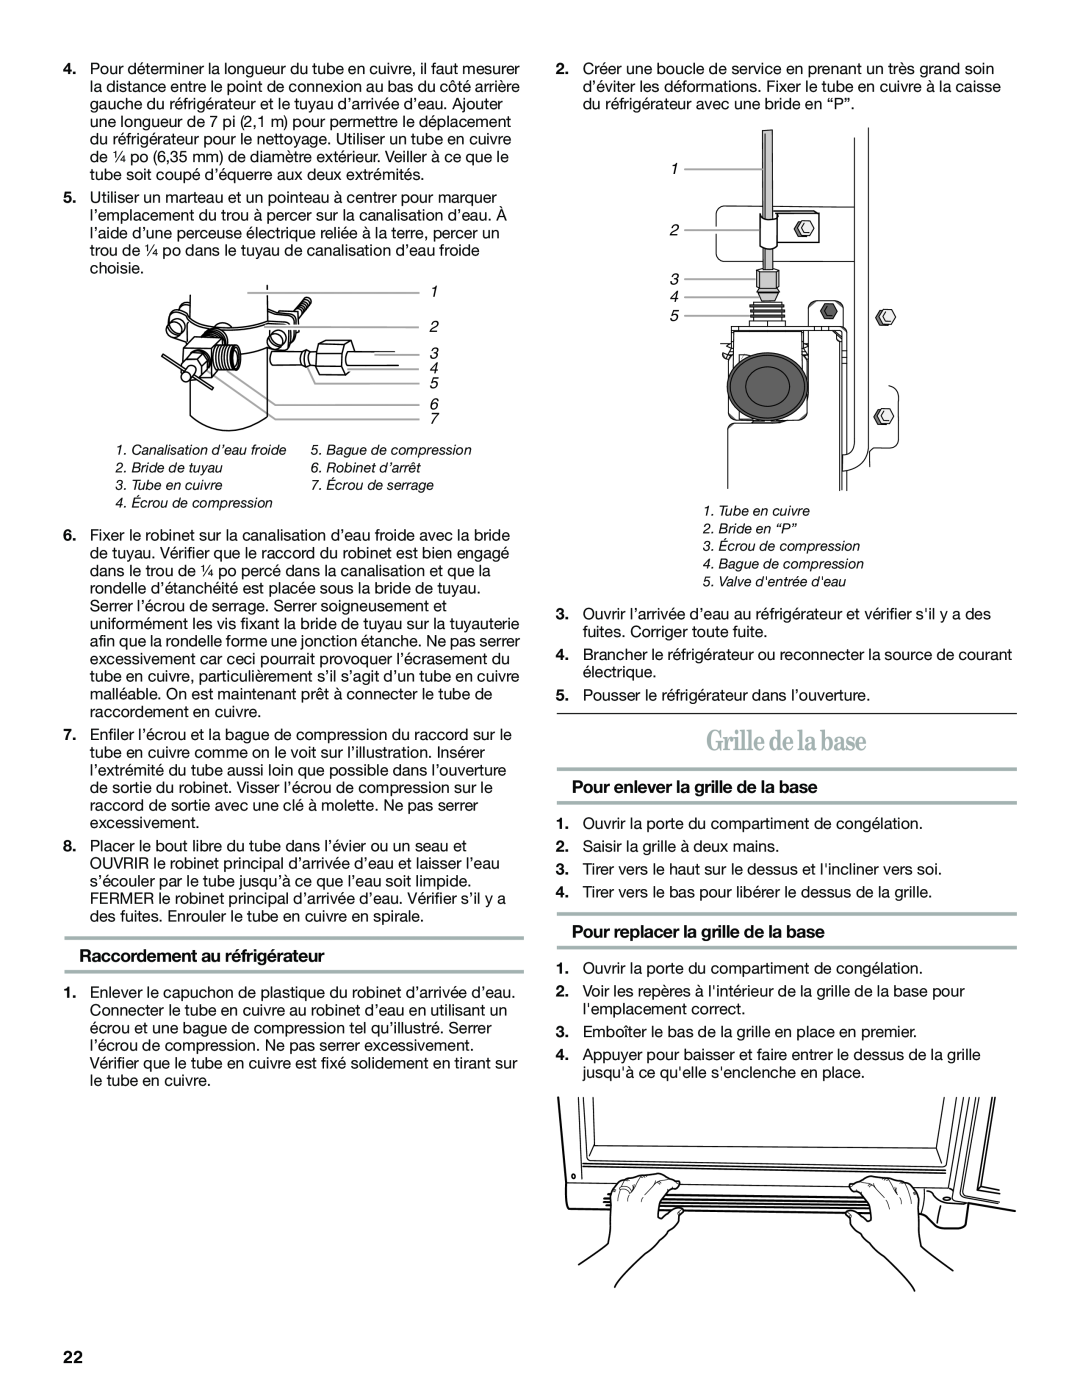 Whirlpool GB2SHKLLS00 manual Grille de la base, Raccordement au réfrigérateur, Pour enlever la grille de la base 